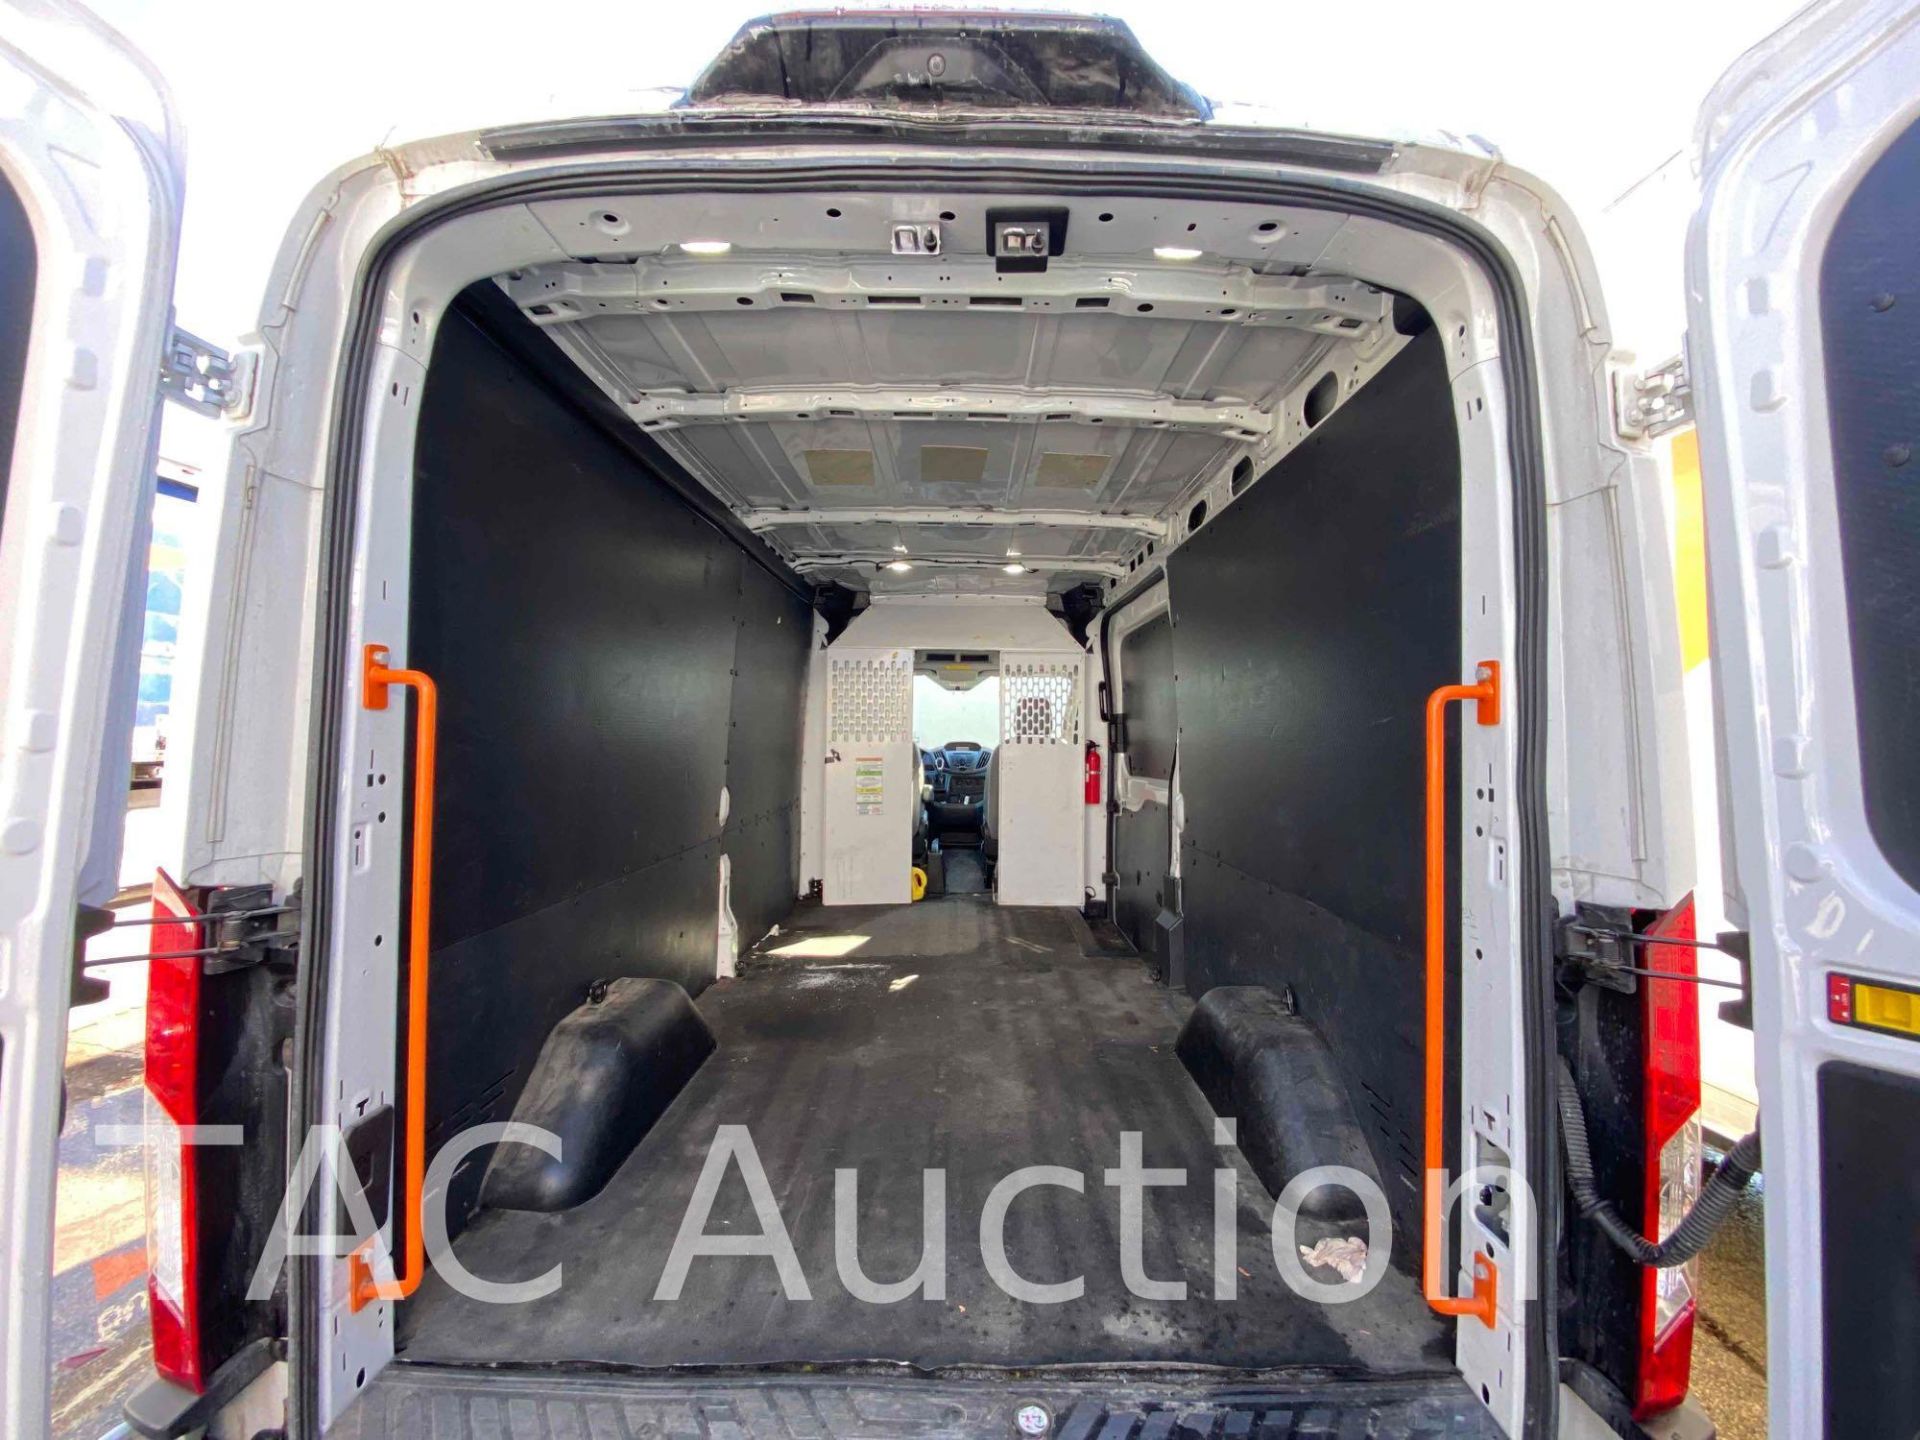 2019 Ford Transit 150 Cargo Van - Image 14 of 48